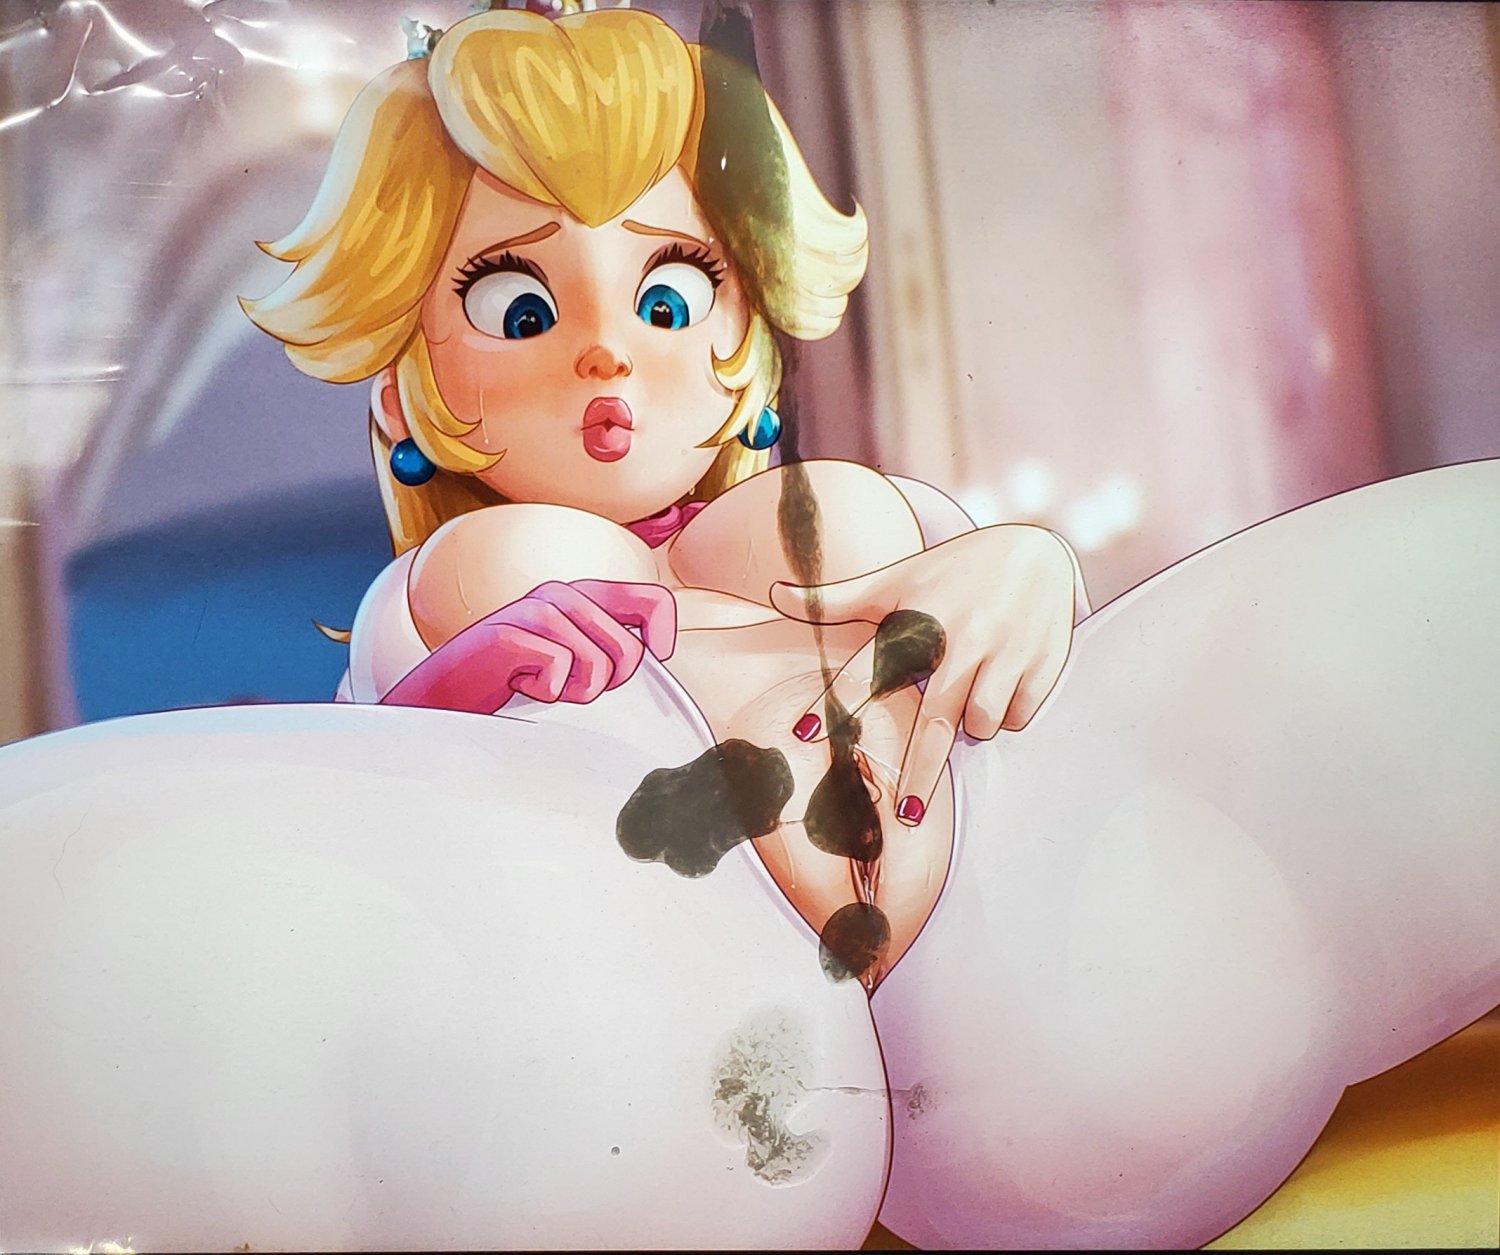 1500px x 1255px - Princess Peach (Mario) - Porn Videos & Photos - EroMe